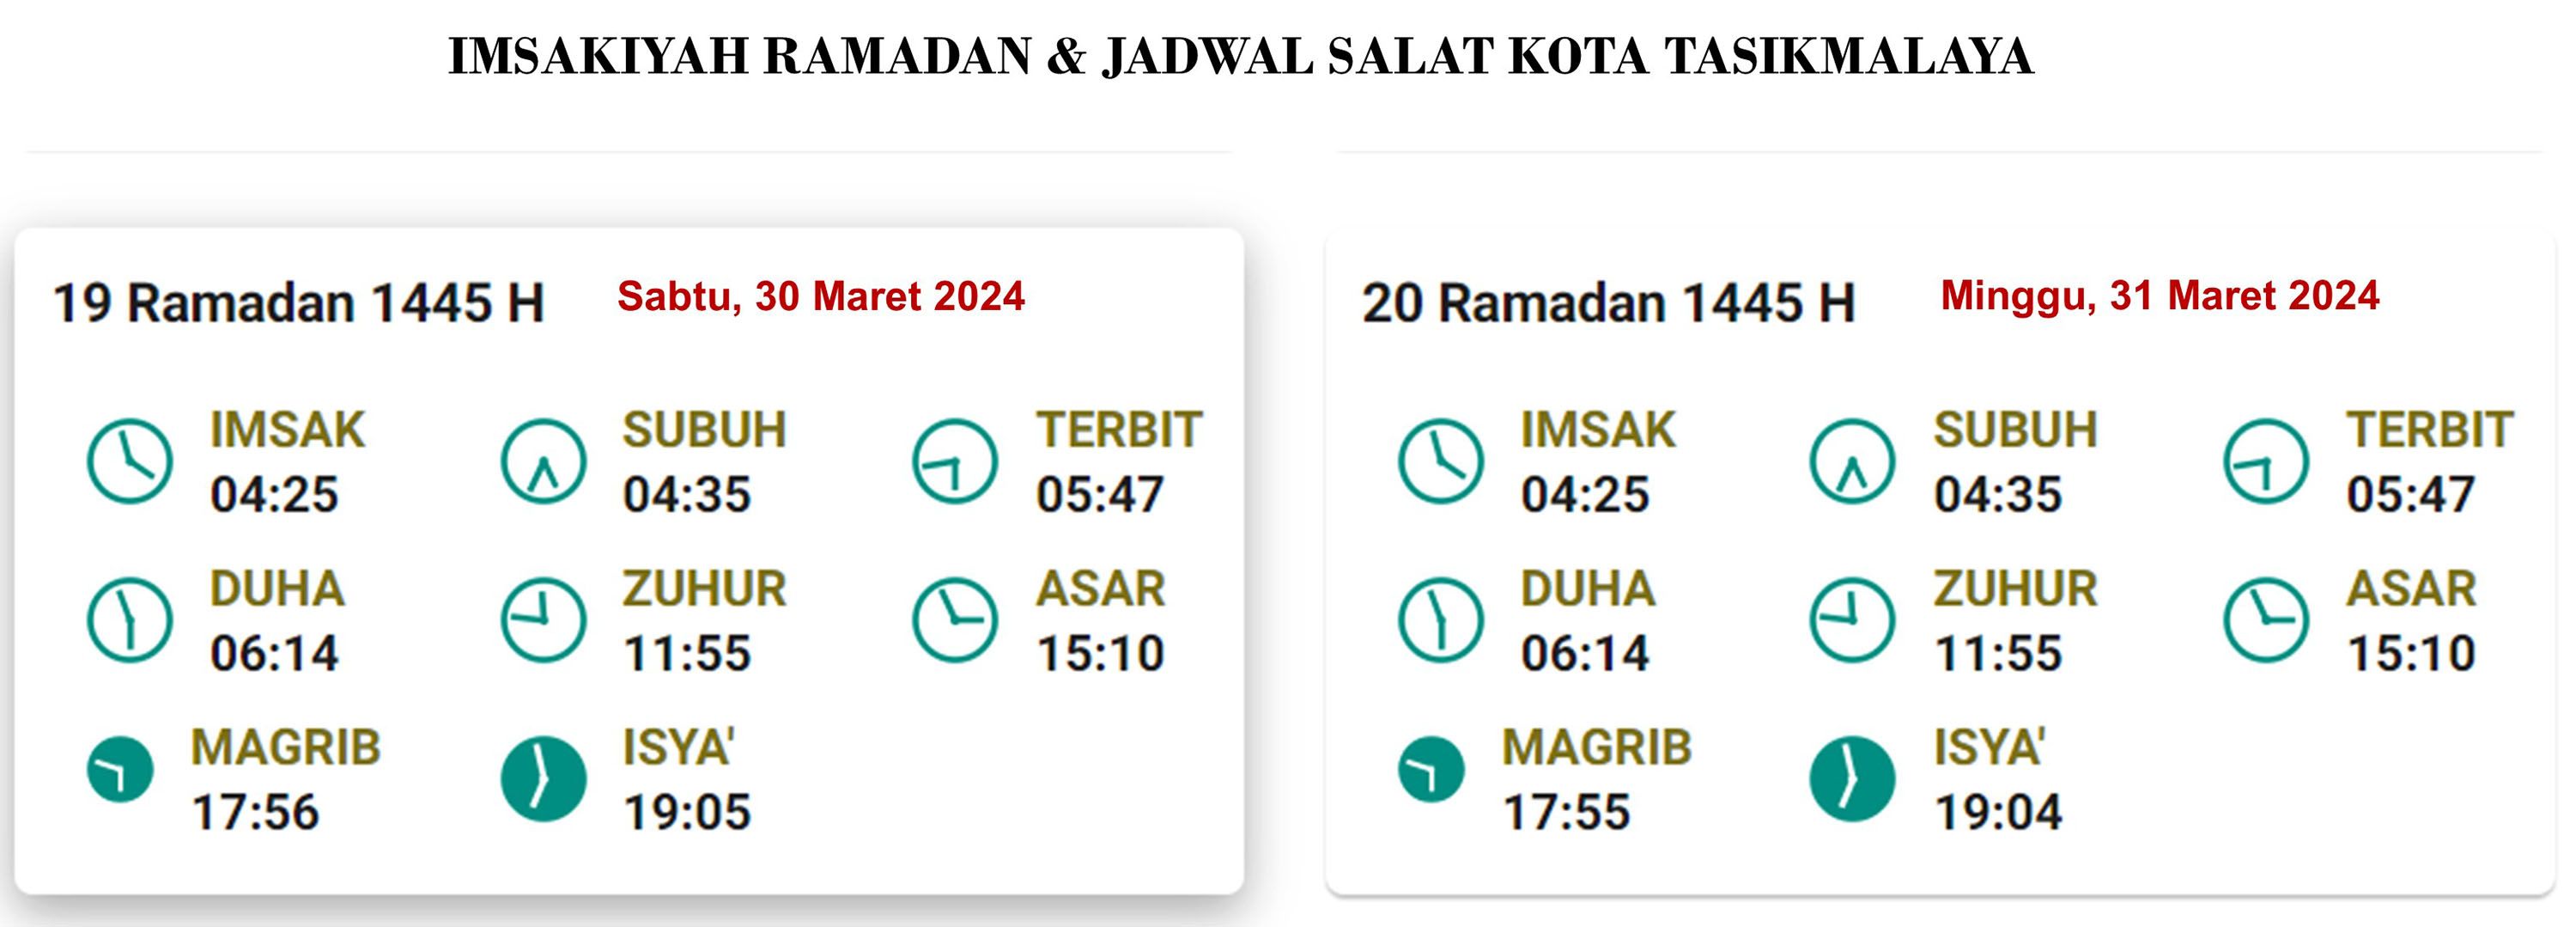 Tasikmalaya: Jadwal Puasa dan Salat, 19 Ramadan 1445 H/30 Maret 2024